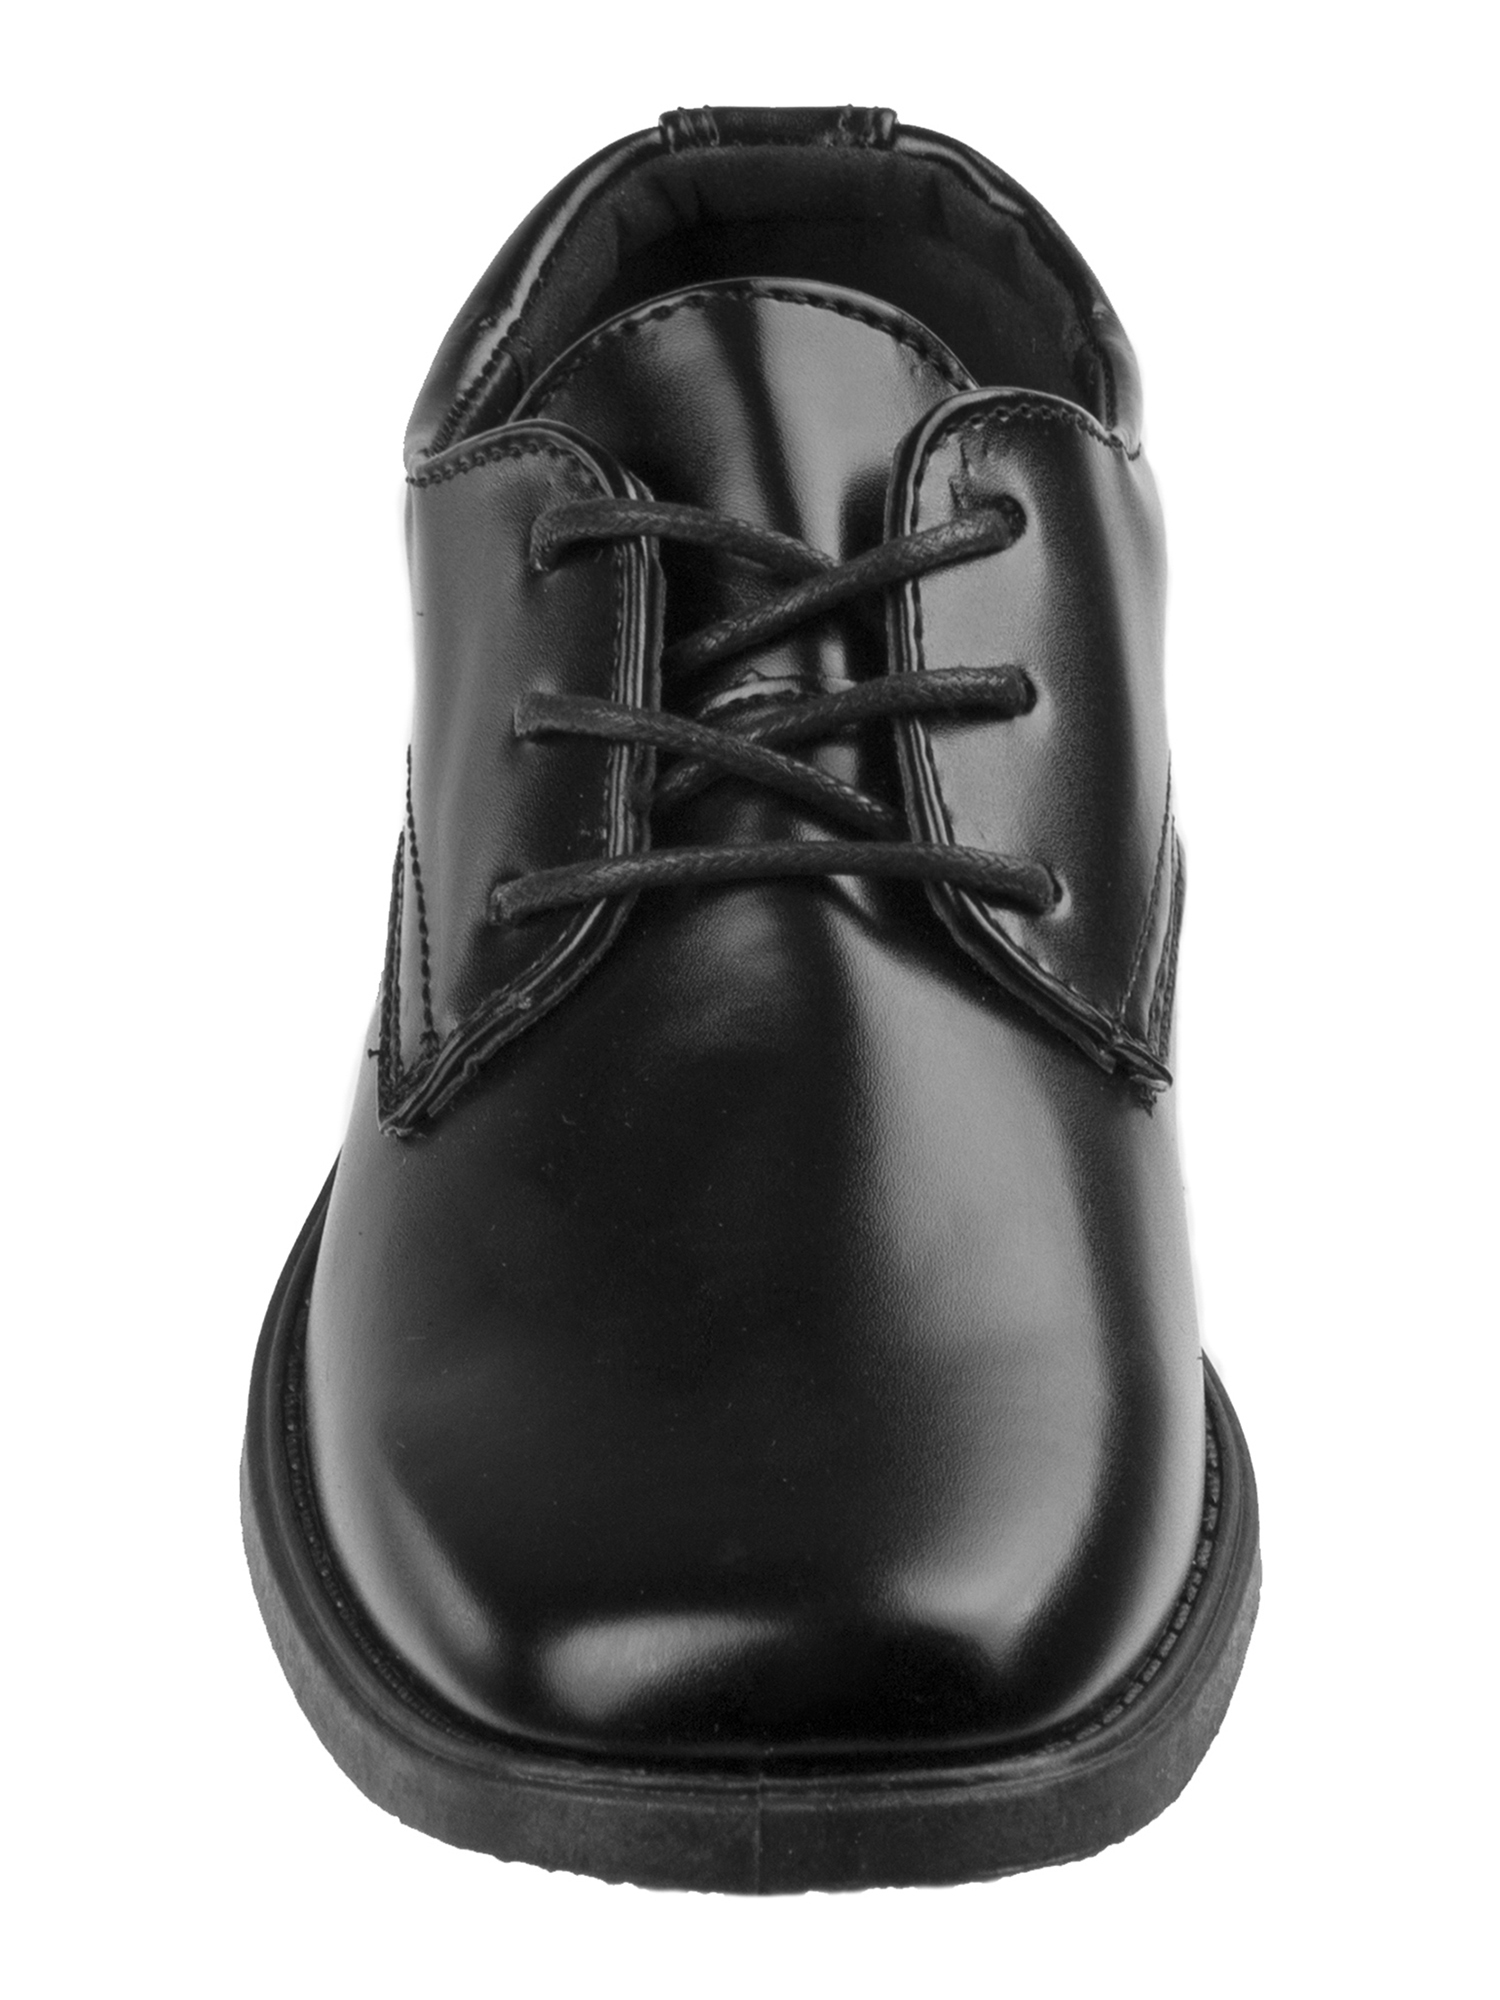 Joseph Allen Boys' Dress Shoes - image 3 of 7